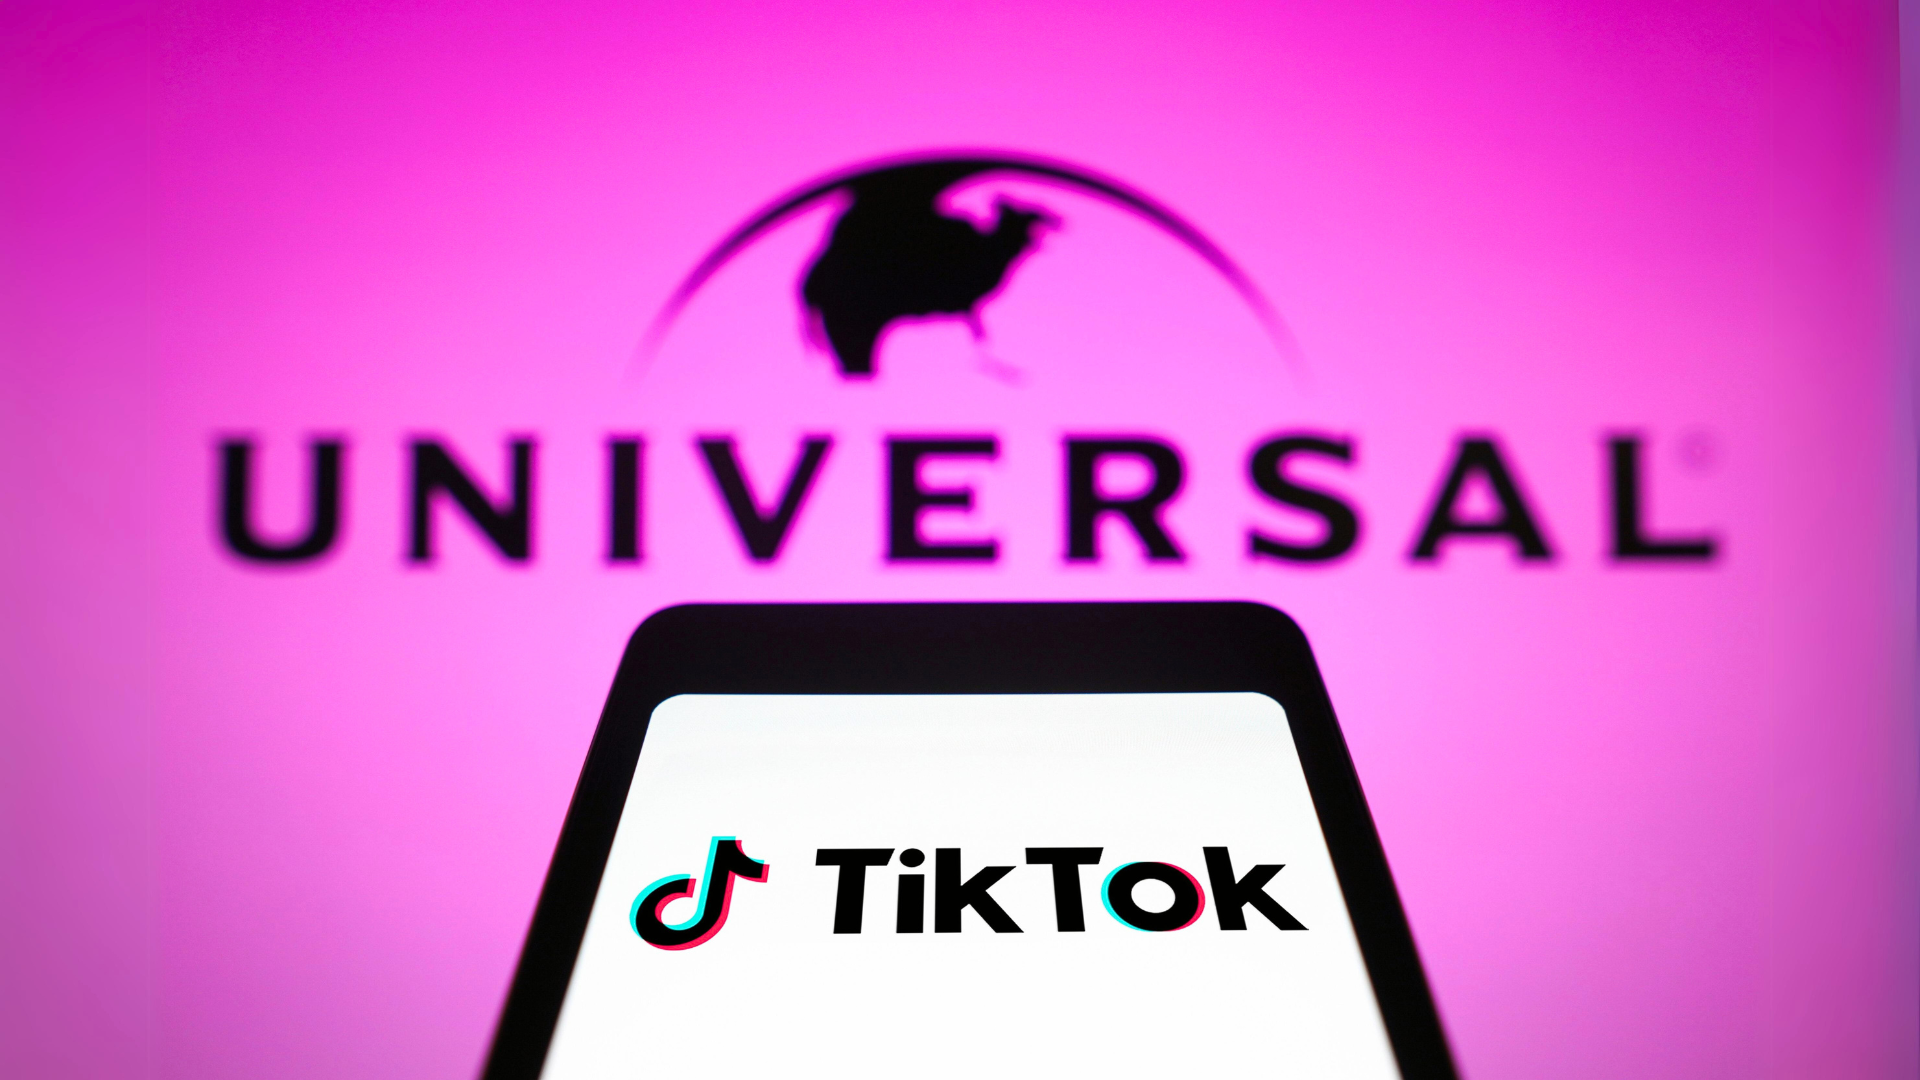 TikTok ameaça remover até 80% das “músicas populares” por disputa com Universal Music